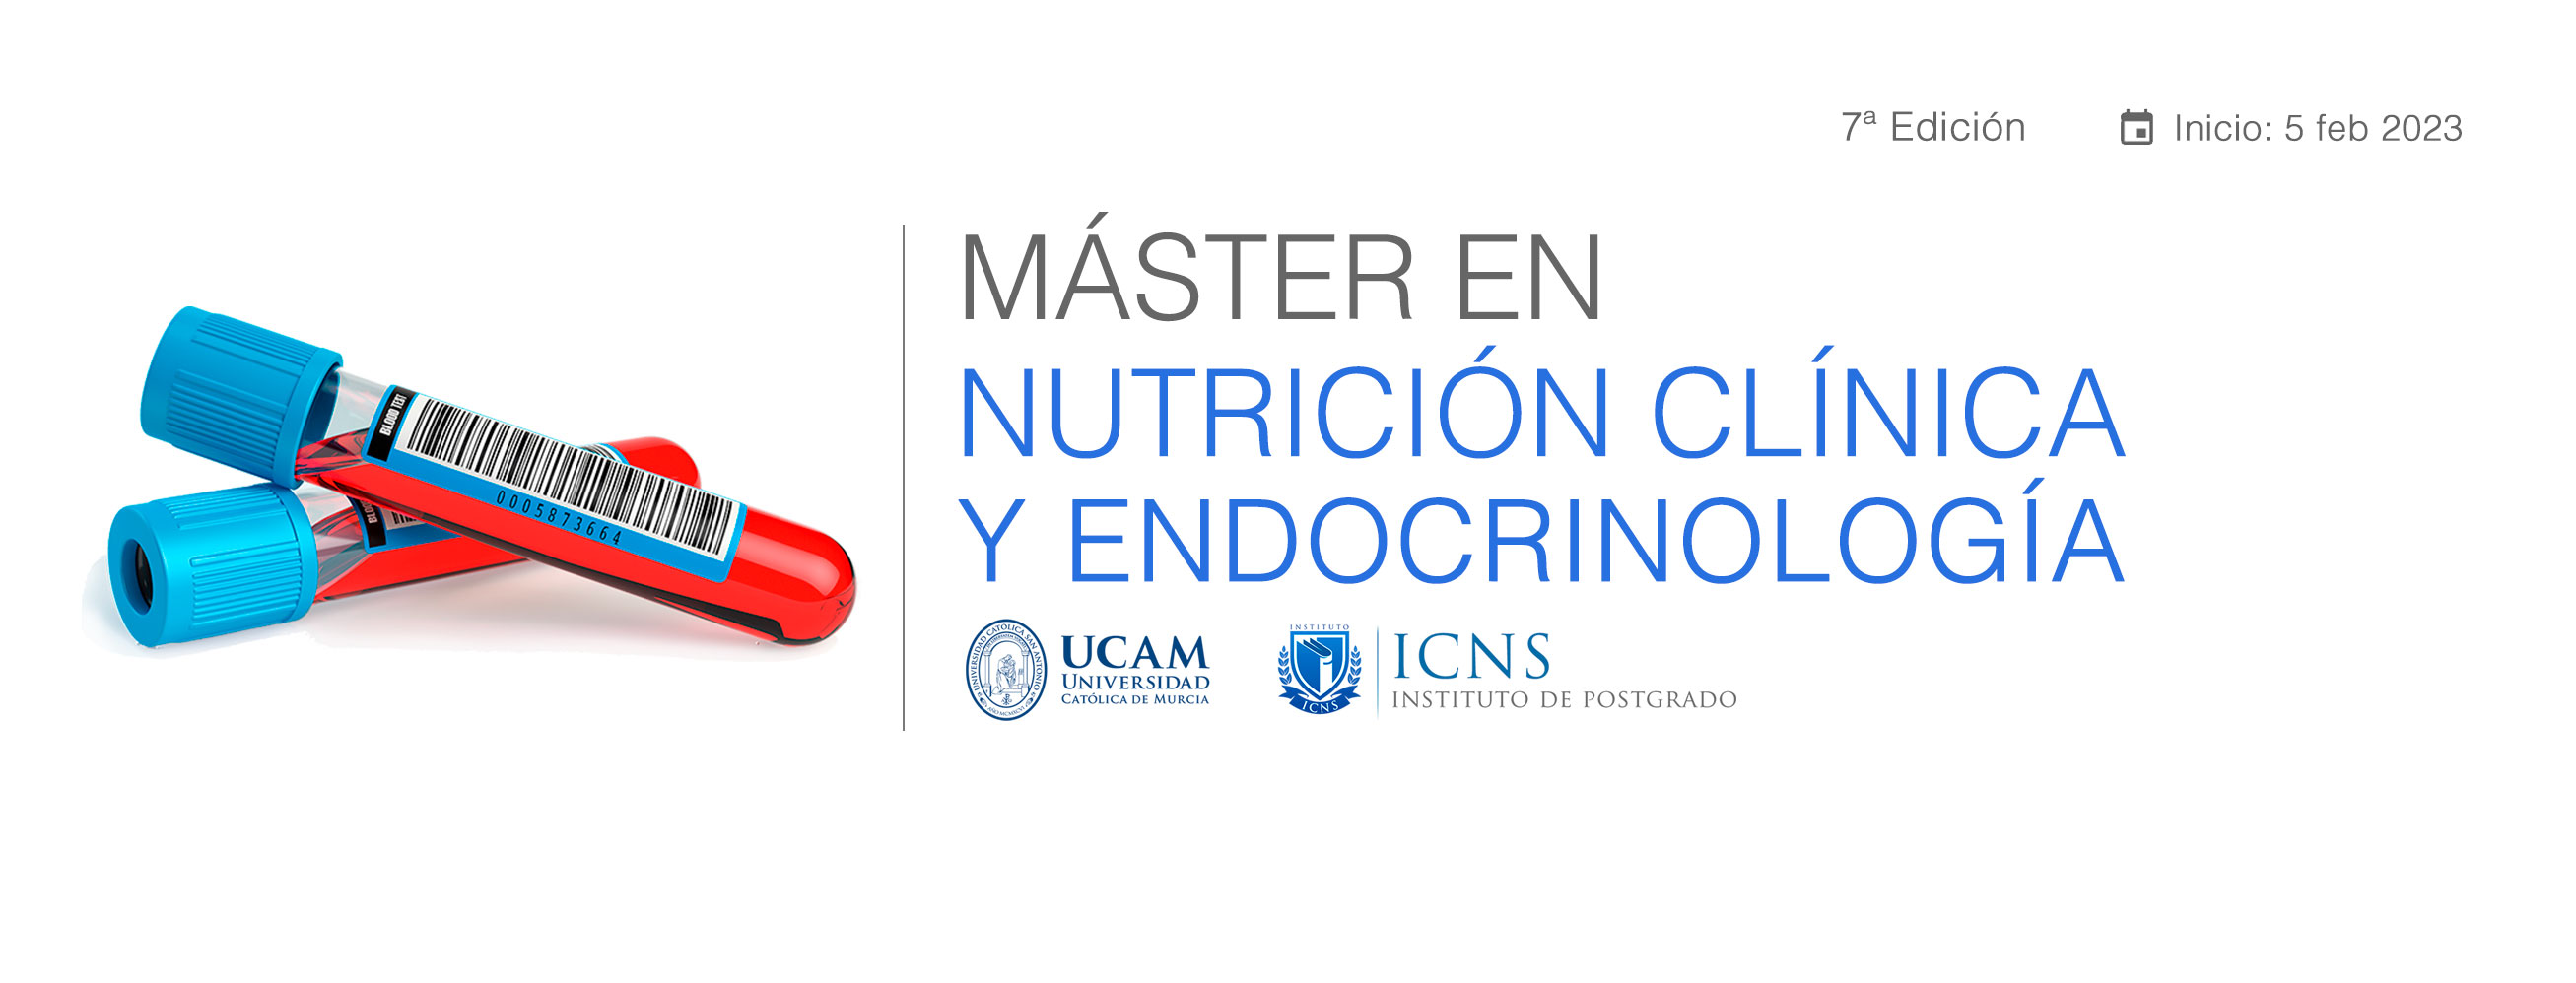 Máster en Nutrición Clínica y Endocrinología